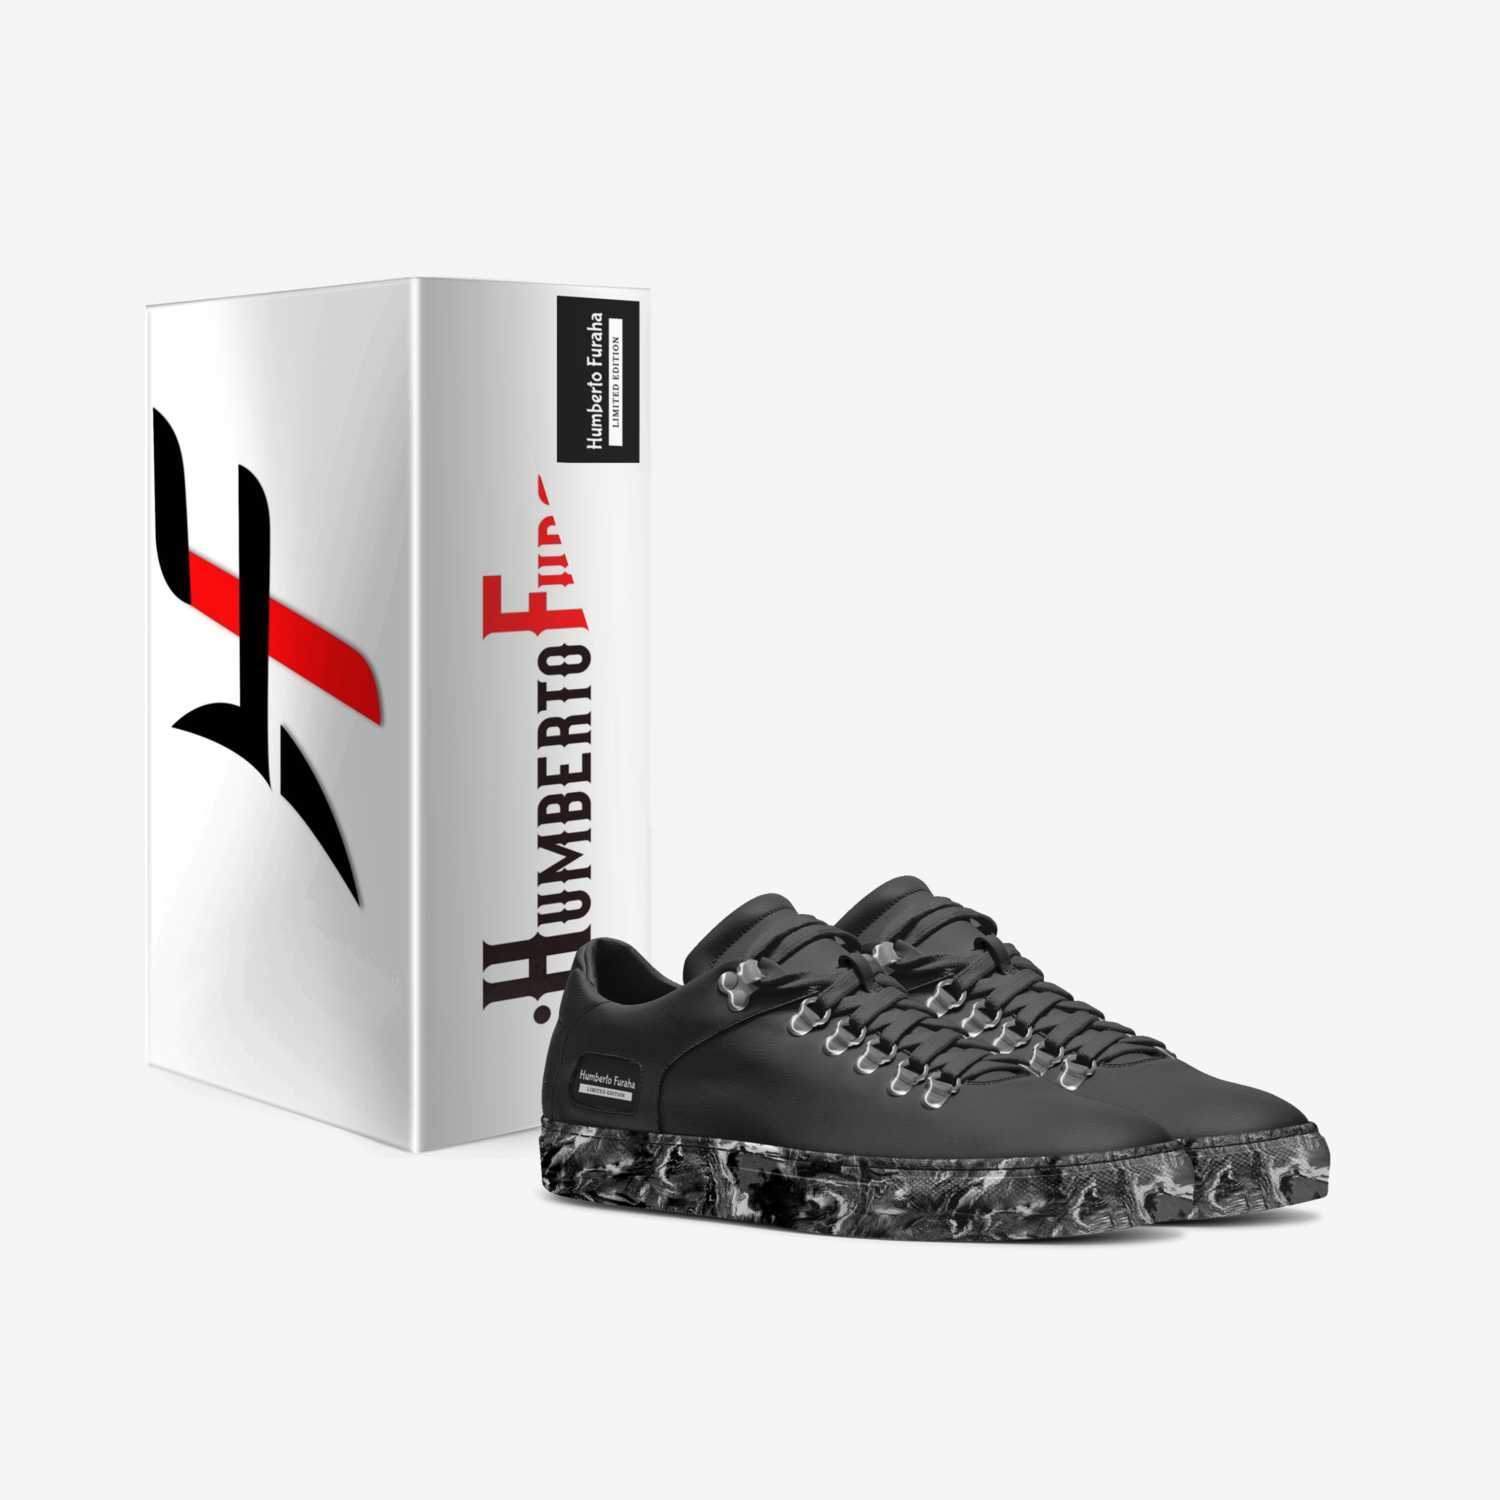 Humberto Furaha custom made in Italy shoes by Pamphyls Batila Batila | Box view